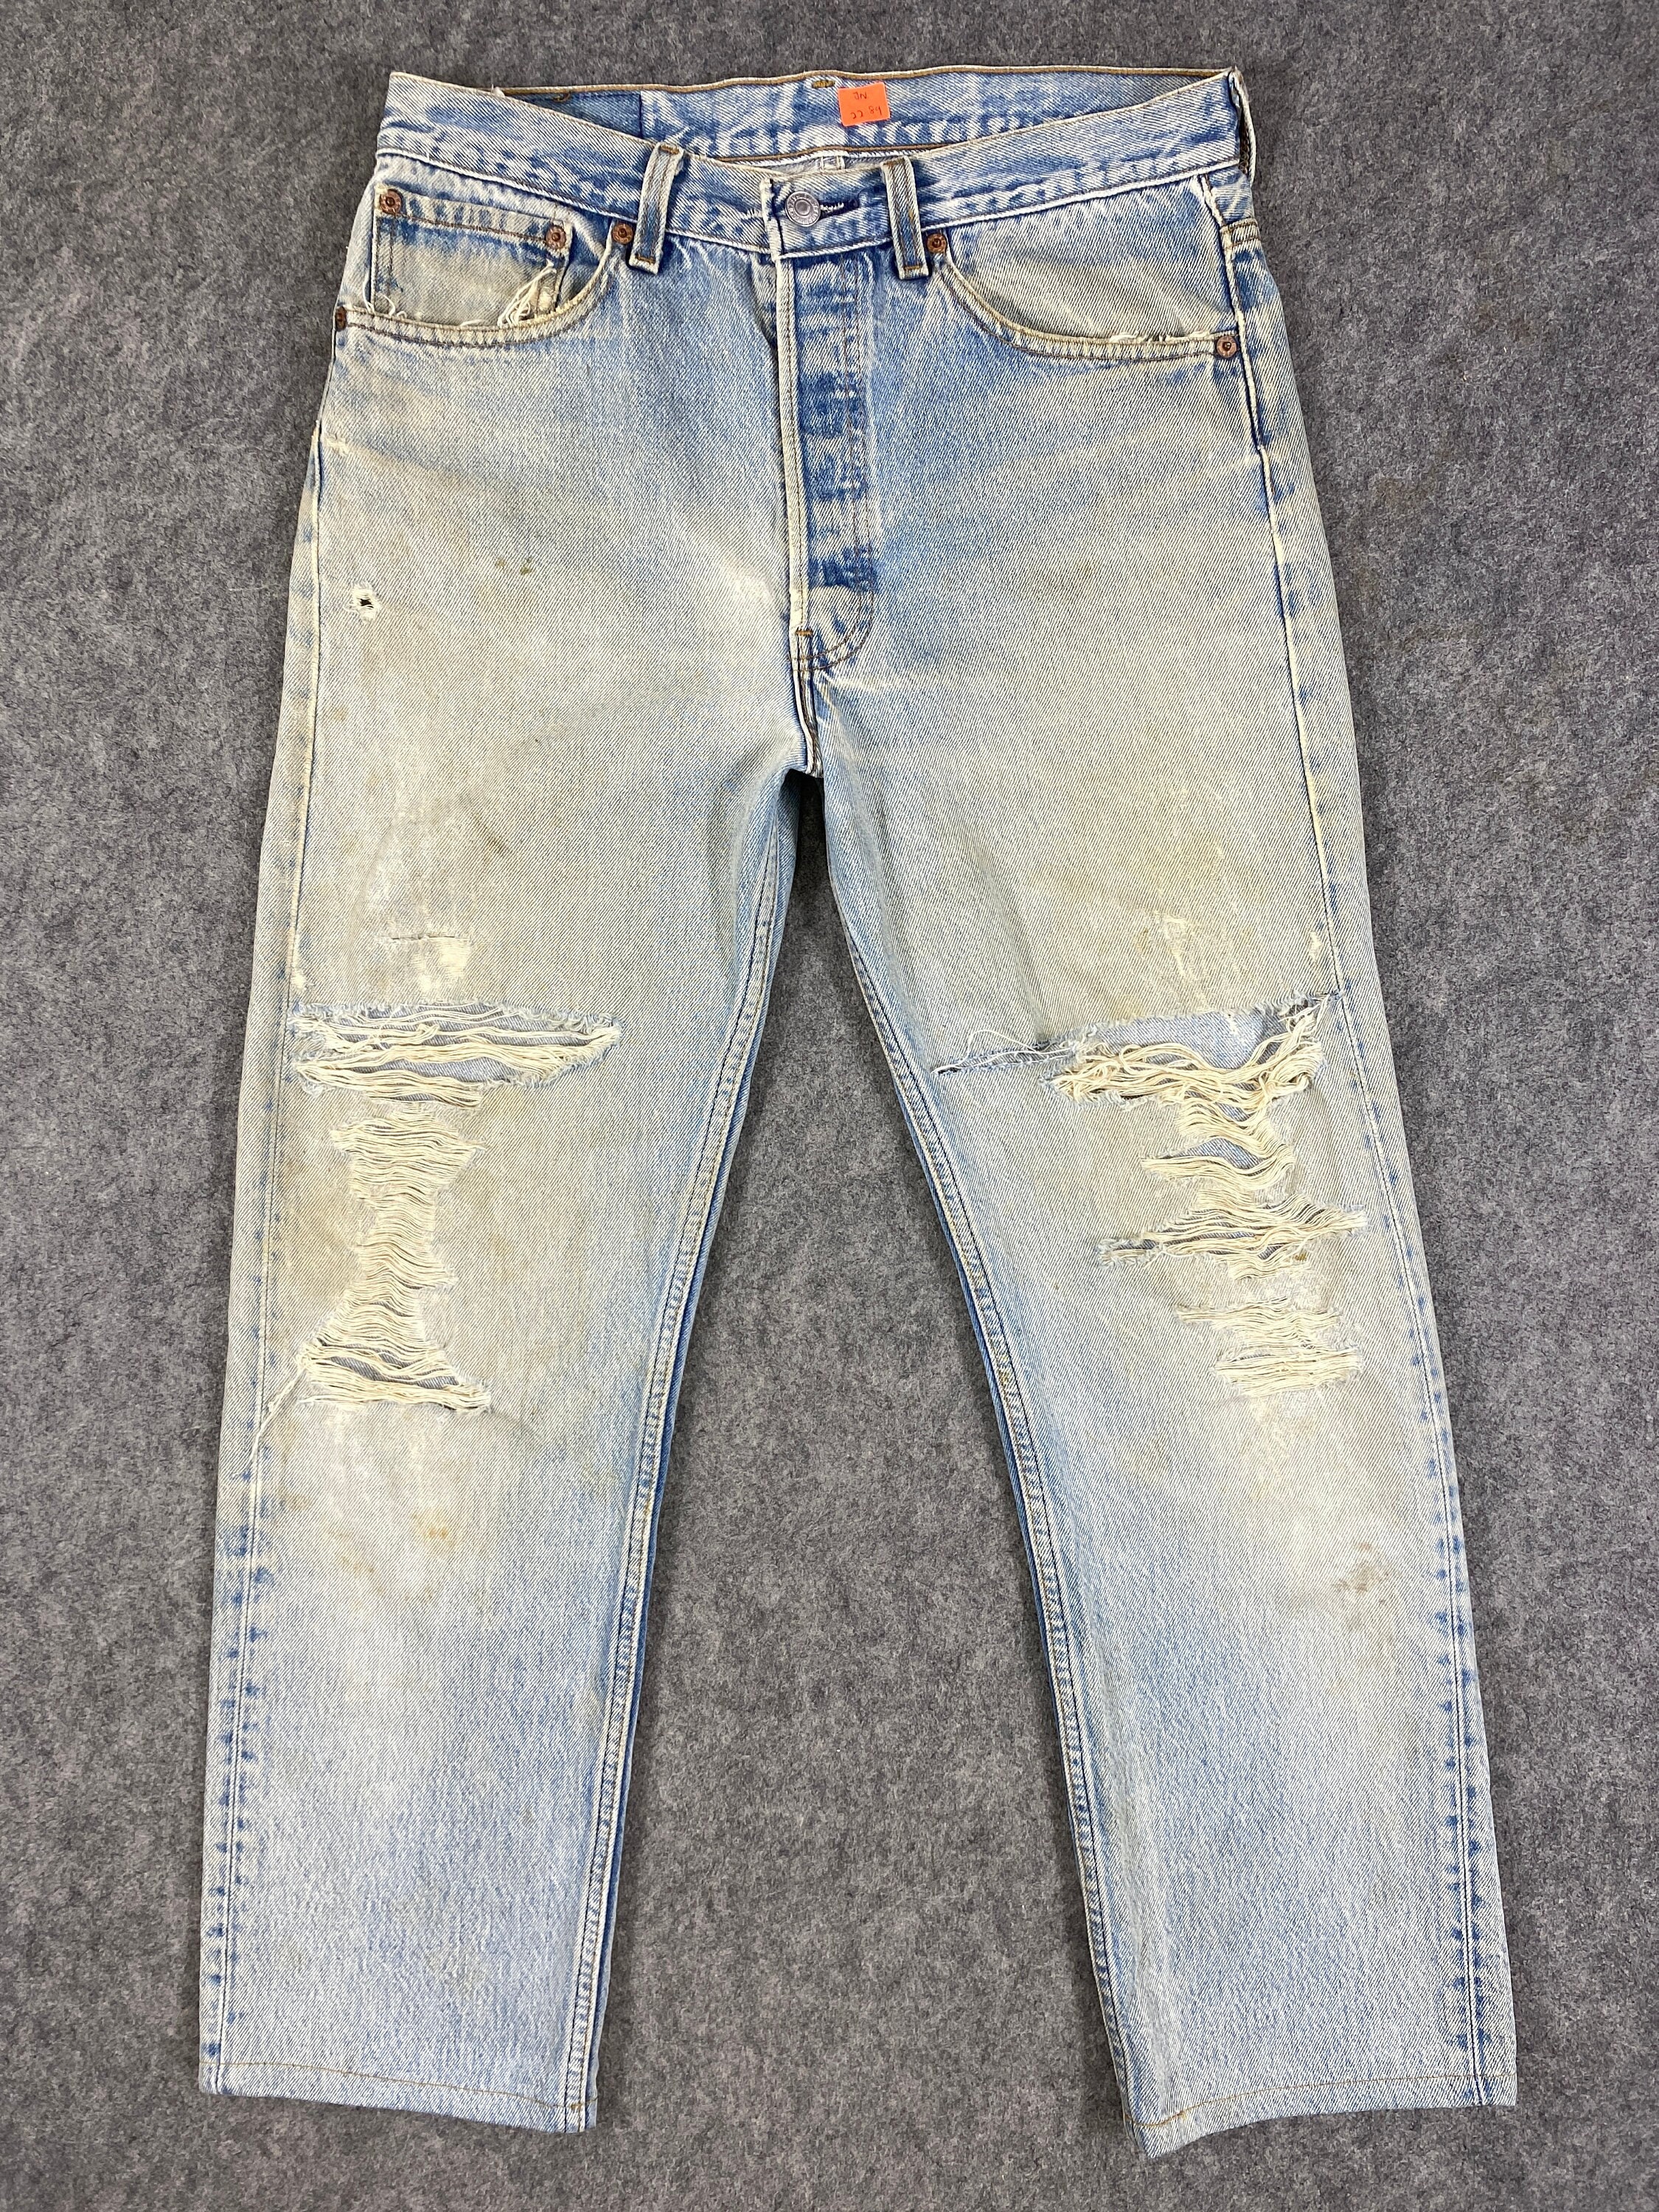 Kleding Gender-neutrale kleding volwassenen Jeans 90's Vintage Levi's 501 USA Jeans 31x27.5 Lichtblauw Wash Denim Red Tab Faded Denim Grunge Style Vintage Denim Unisex Jeans 